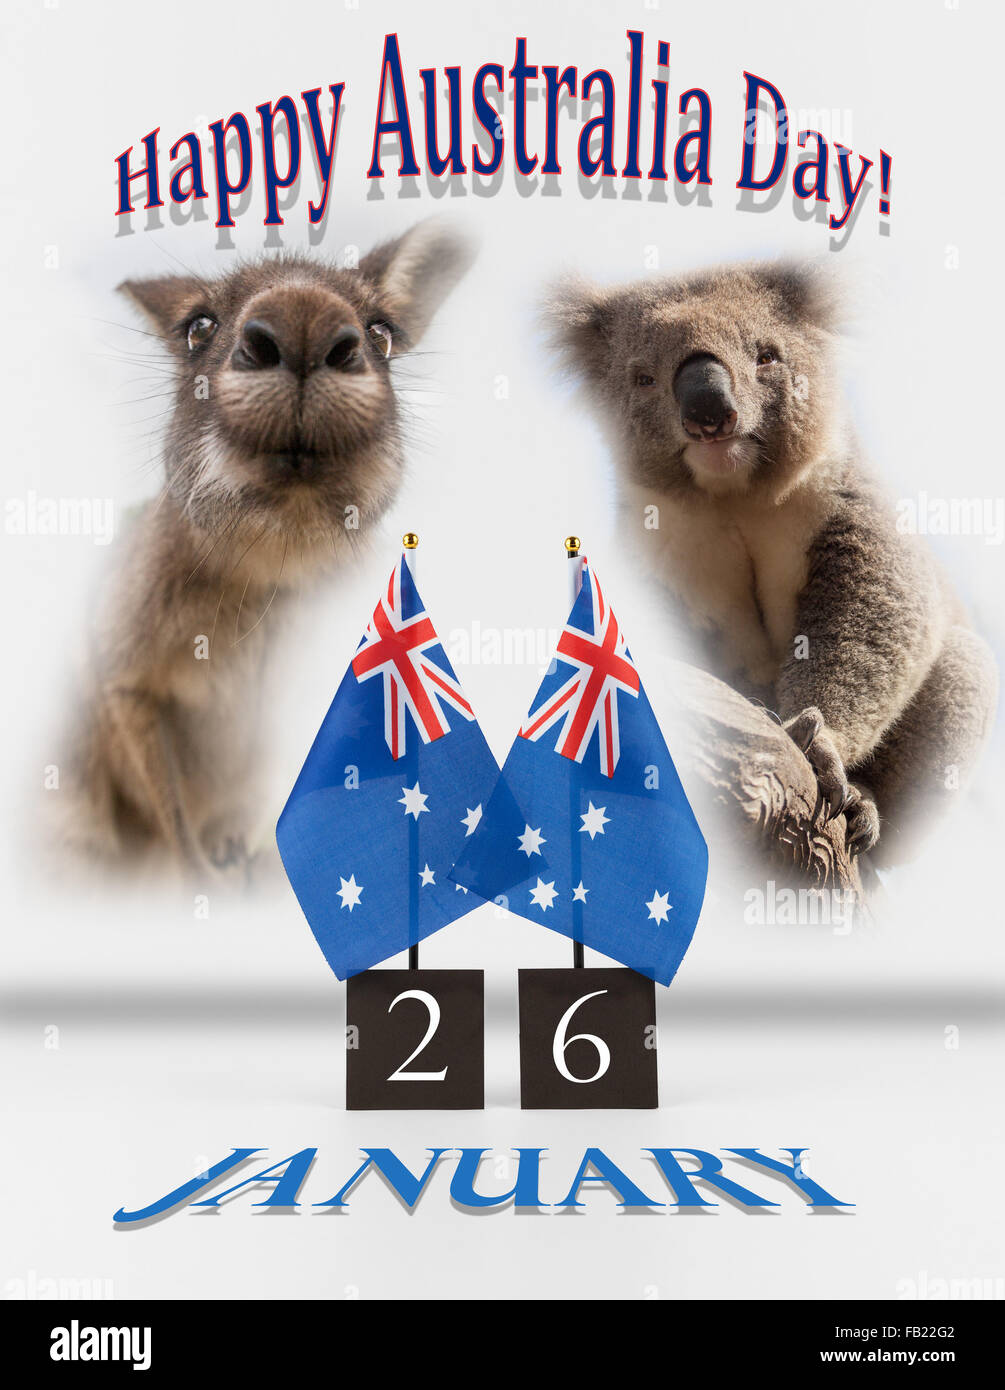 Deux Australian Bureau drapeaux, koala et kangourou. 26 janvier Australie Jour symboles salutations isolated on white. Banque D'Images